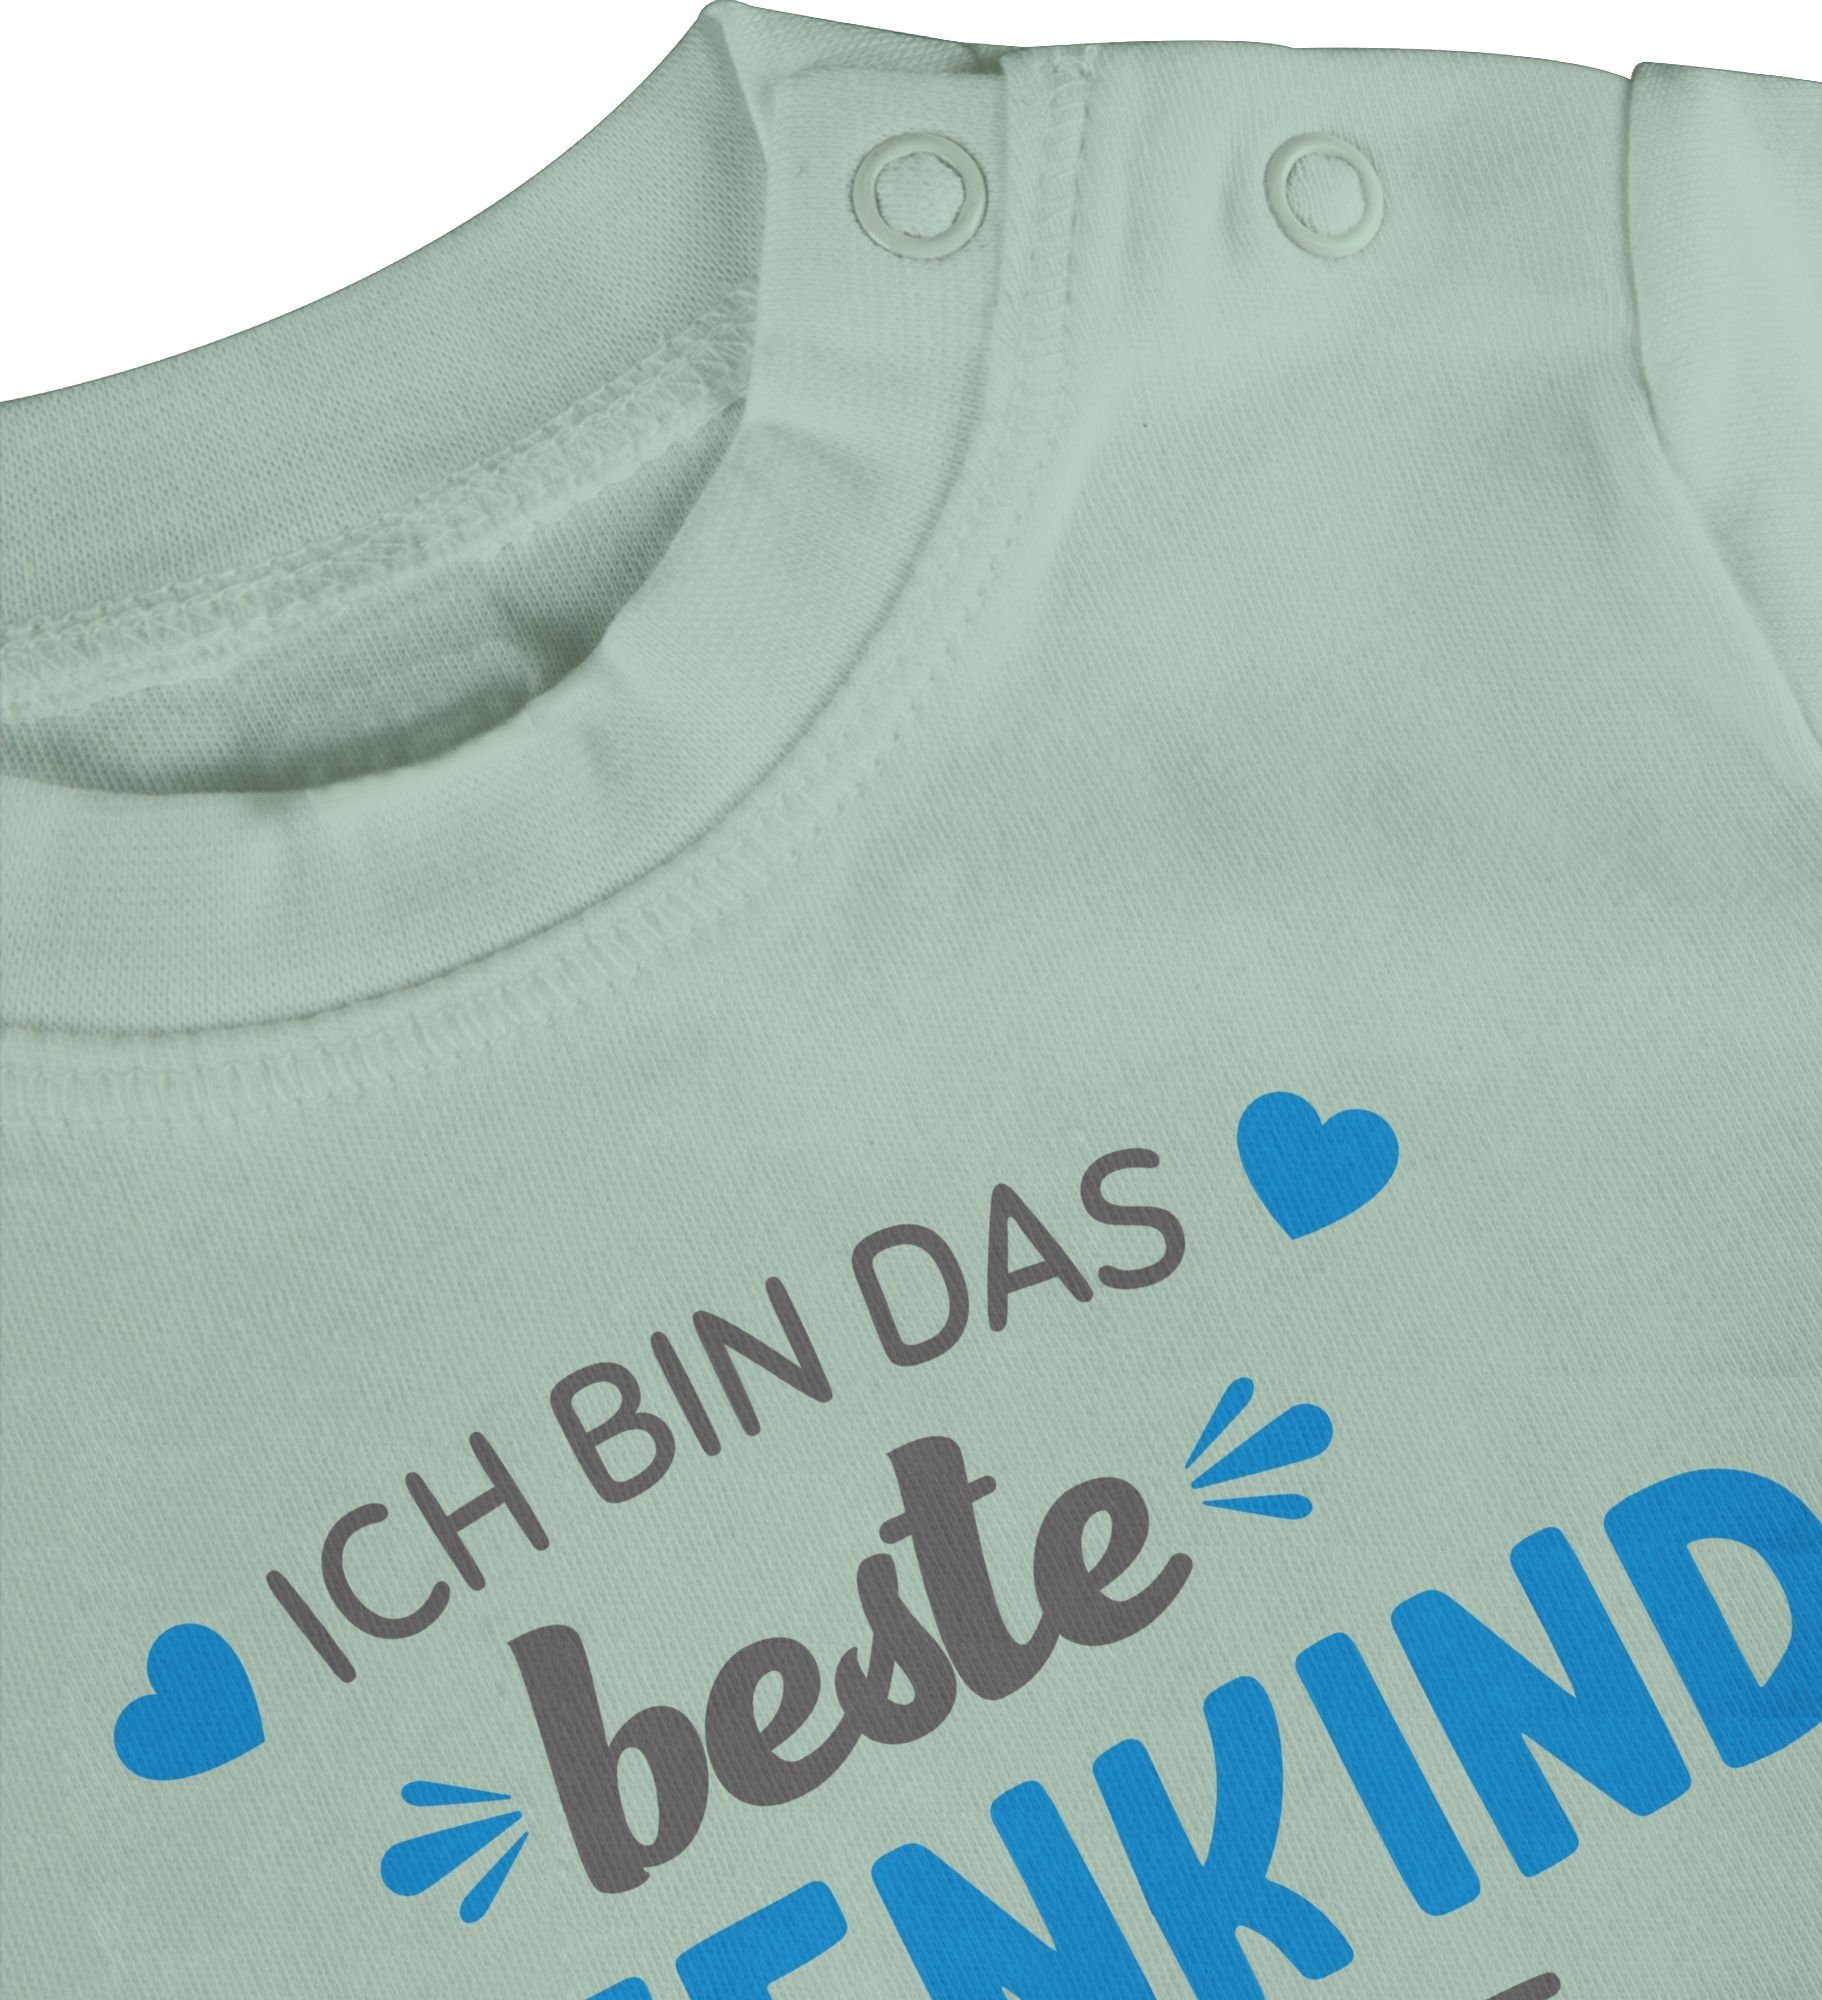 Shirtracer T-Shirt Ich bin das der beste Mintgrün Baby Welt Patenonkel 2 Patenkind grau/blau